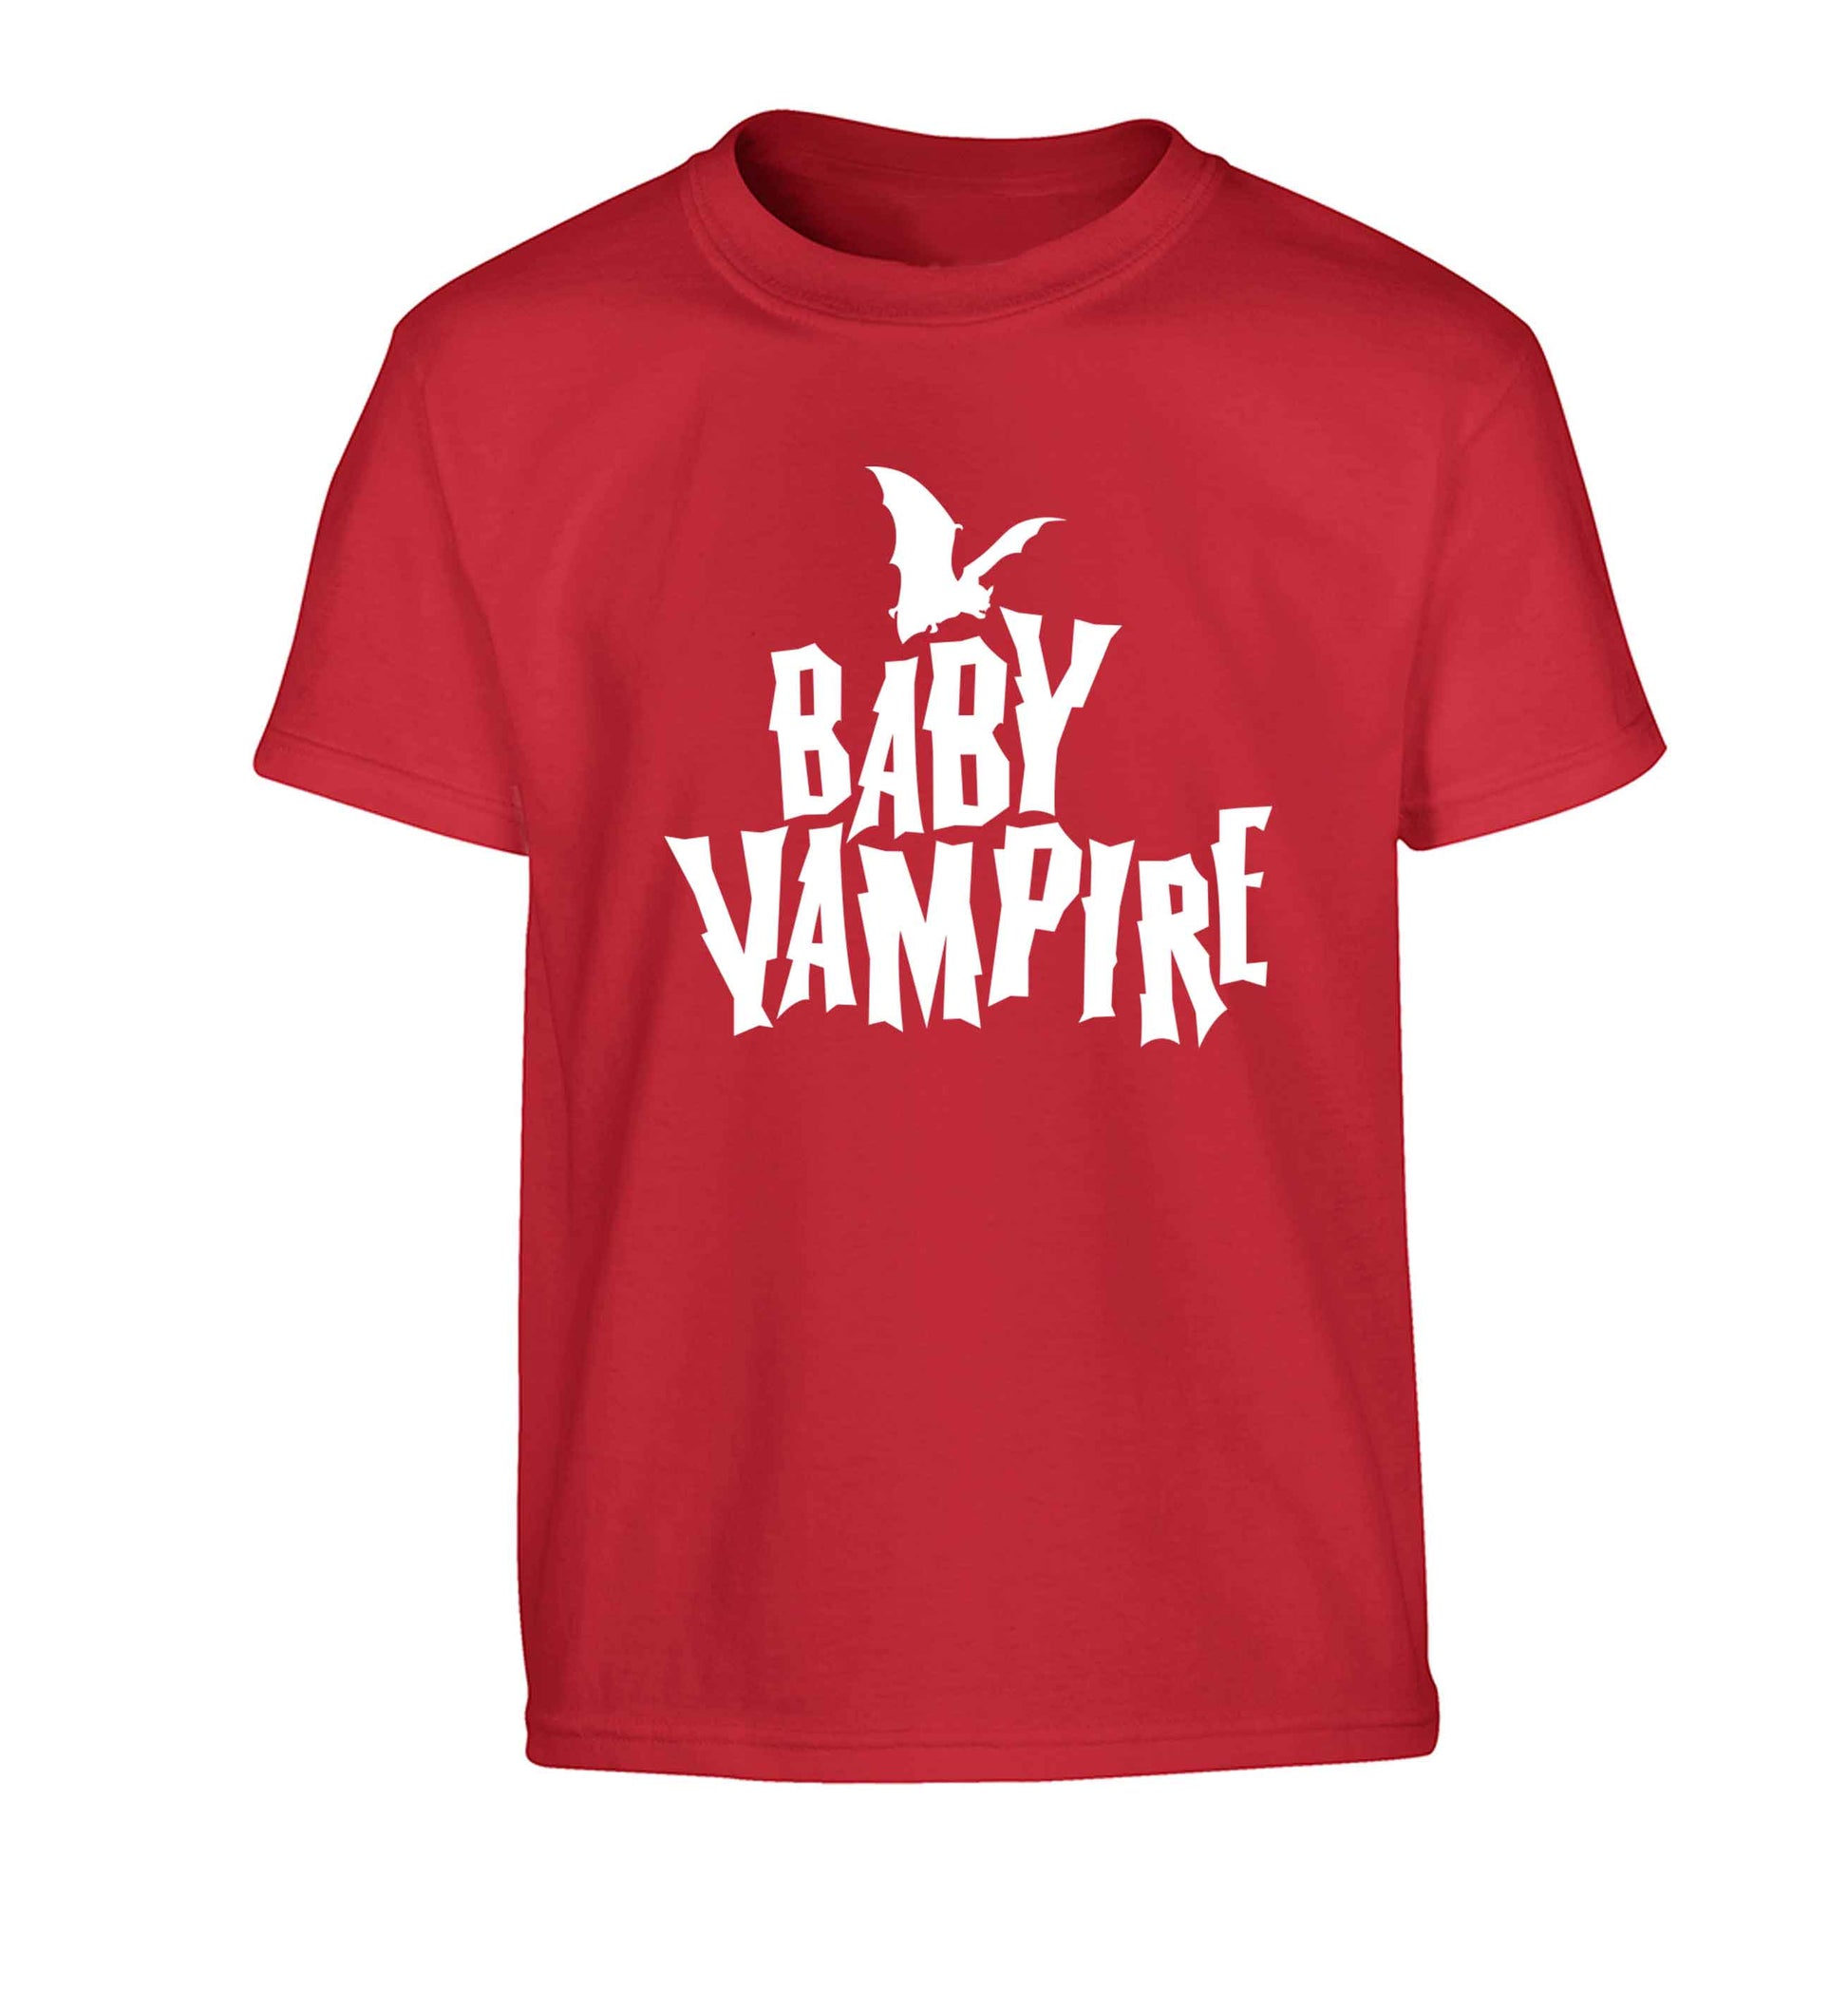 Baby vampire Children's red Tshirt 12-13 Years